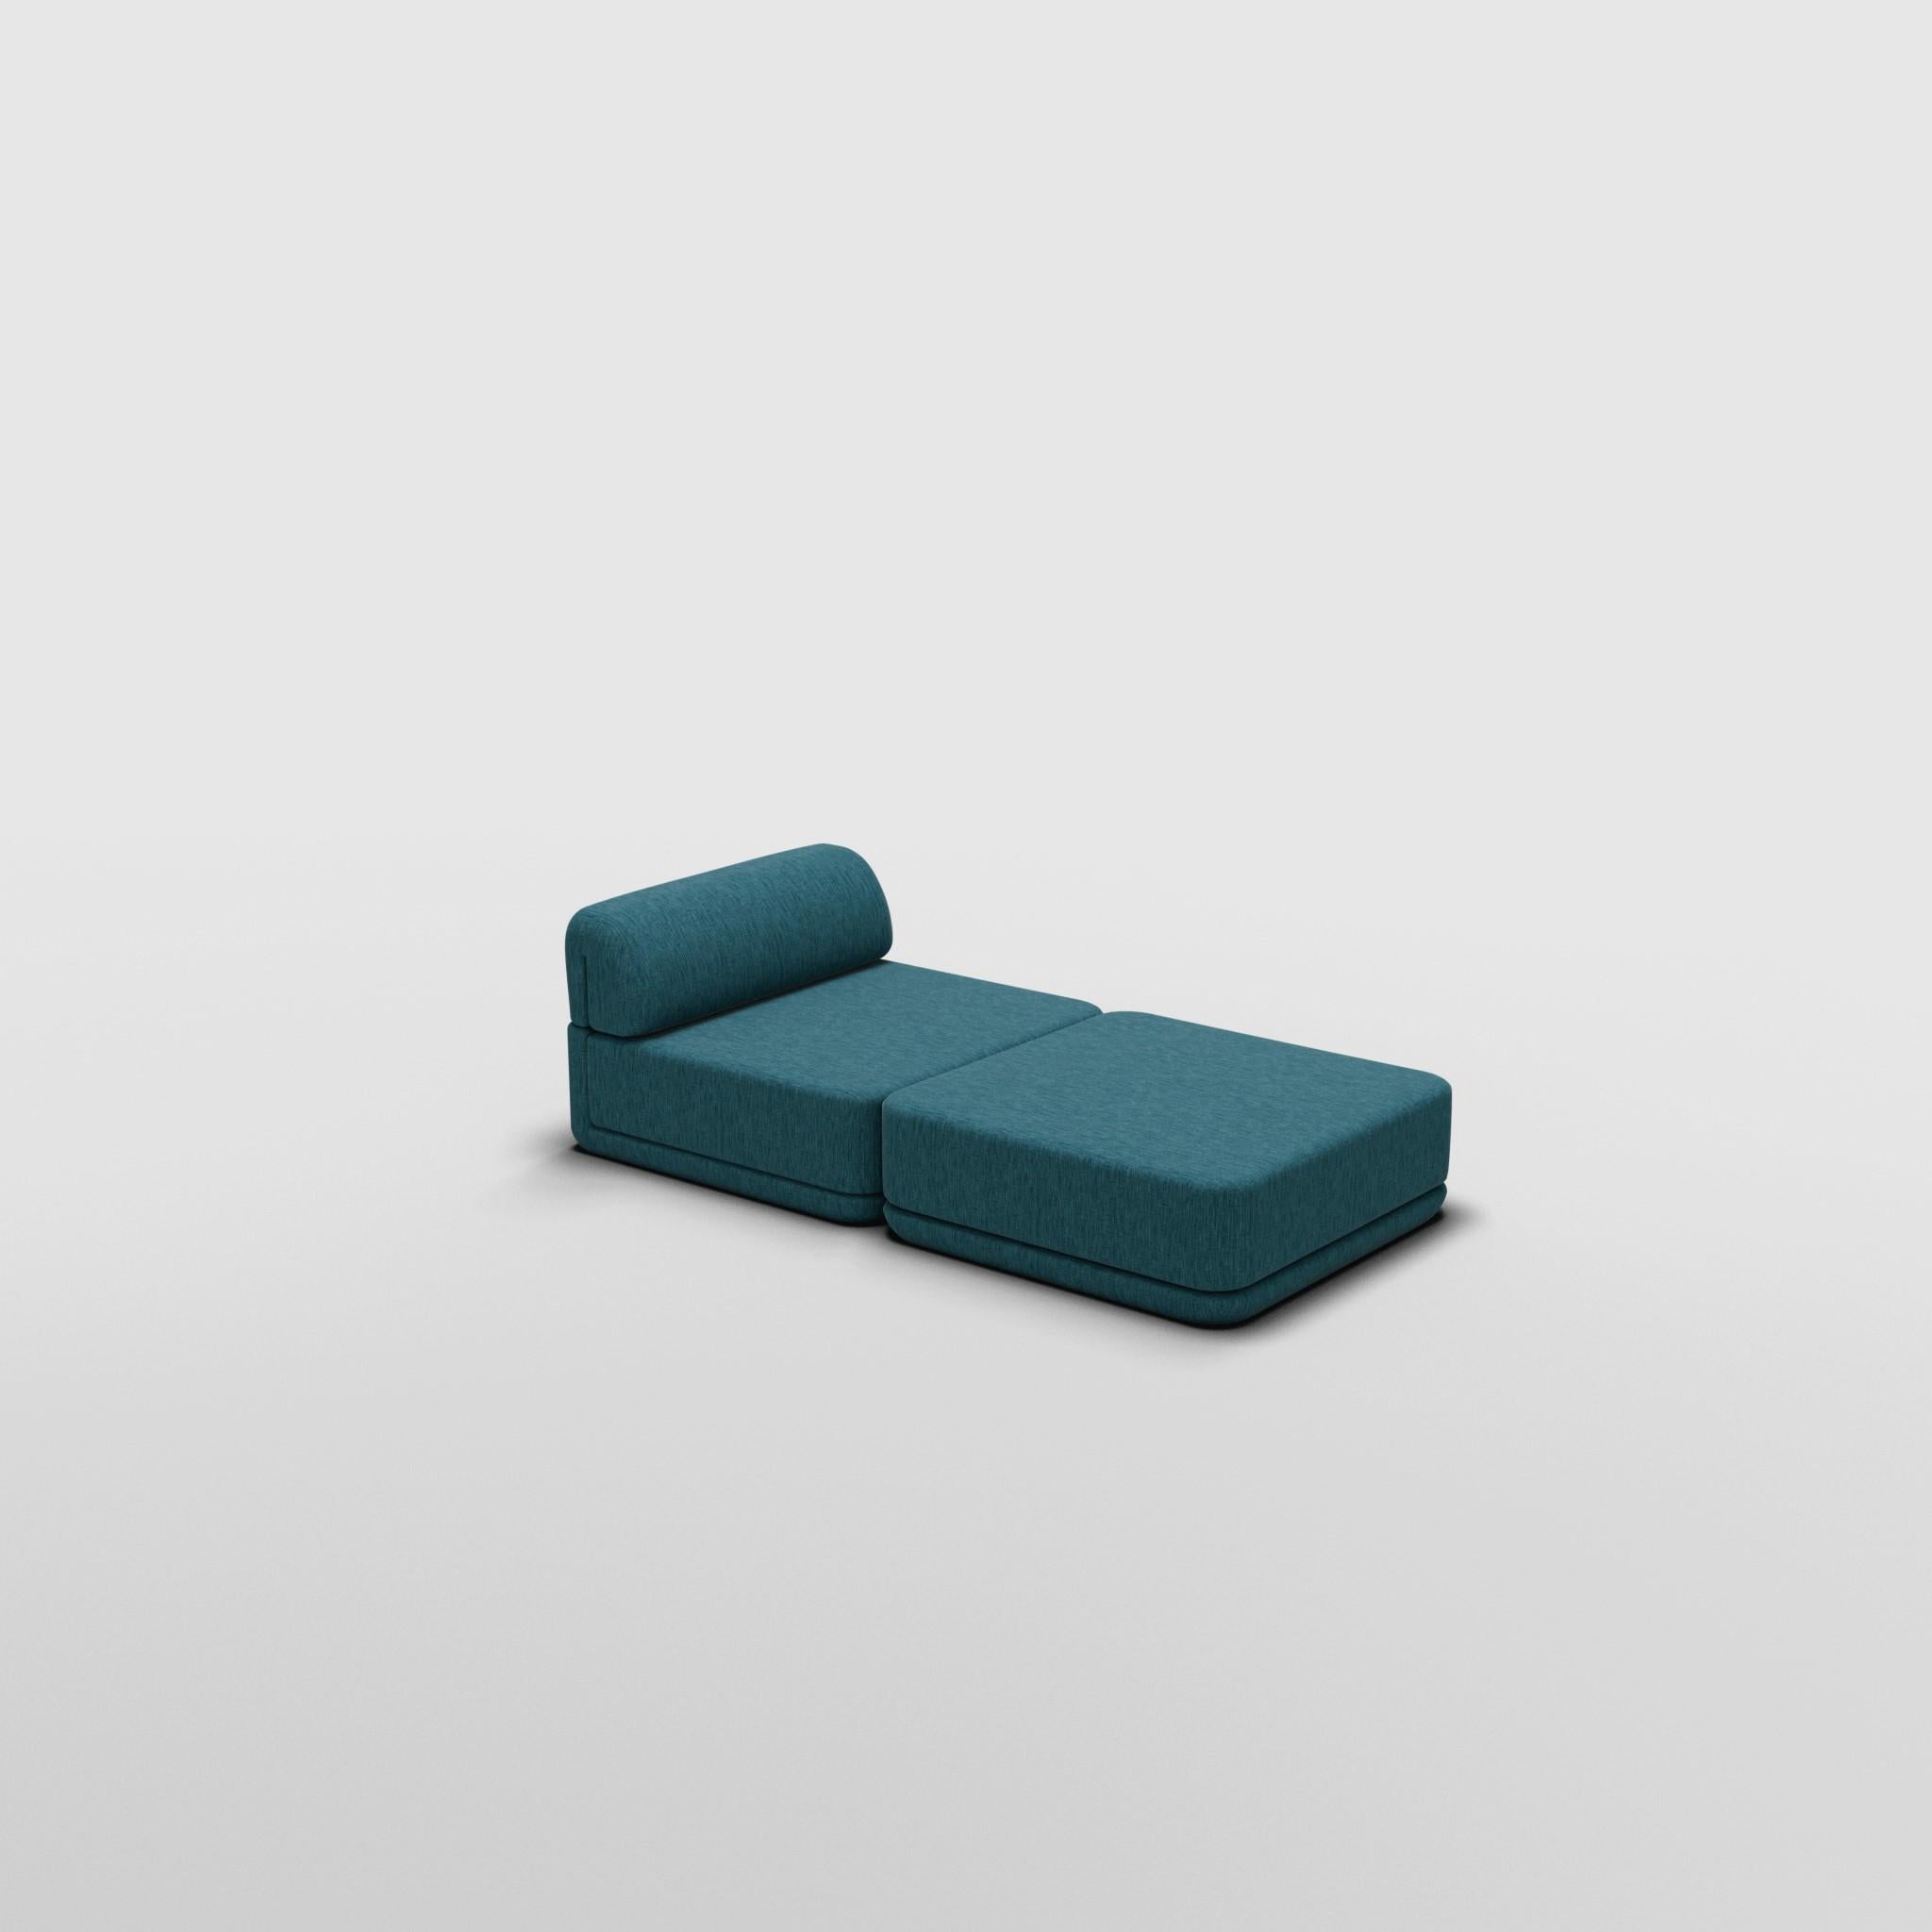 Ensemble Lounge + Ottoman - Inspiré par les meubles de luxe italiens des années 70

Découvrez le canapé Cube, où l'art rencontre l'adaptabilité. Son design sculptural et son confort personnalisable créent des possibilités infinies pour votre espace